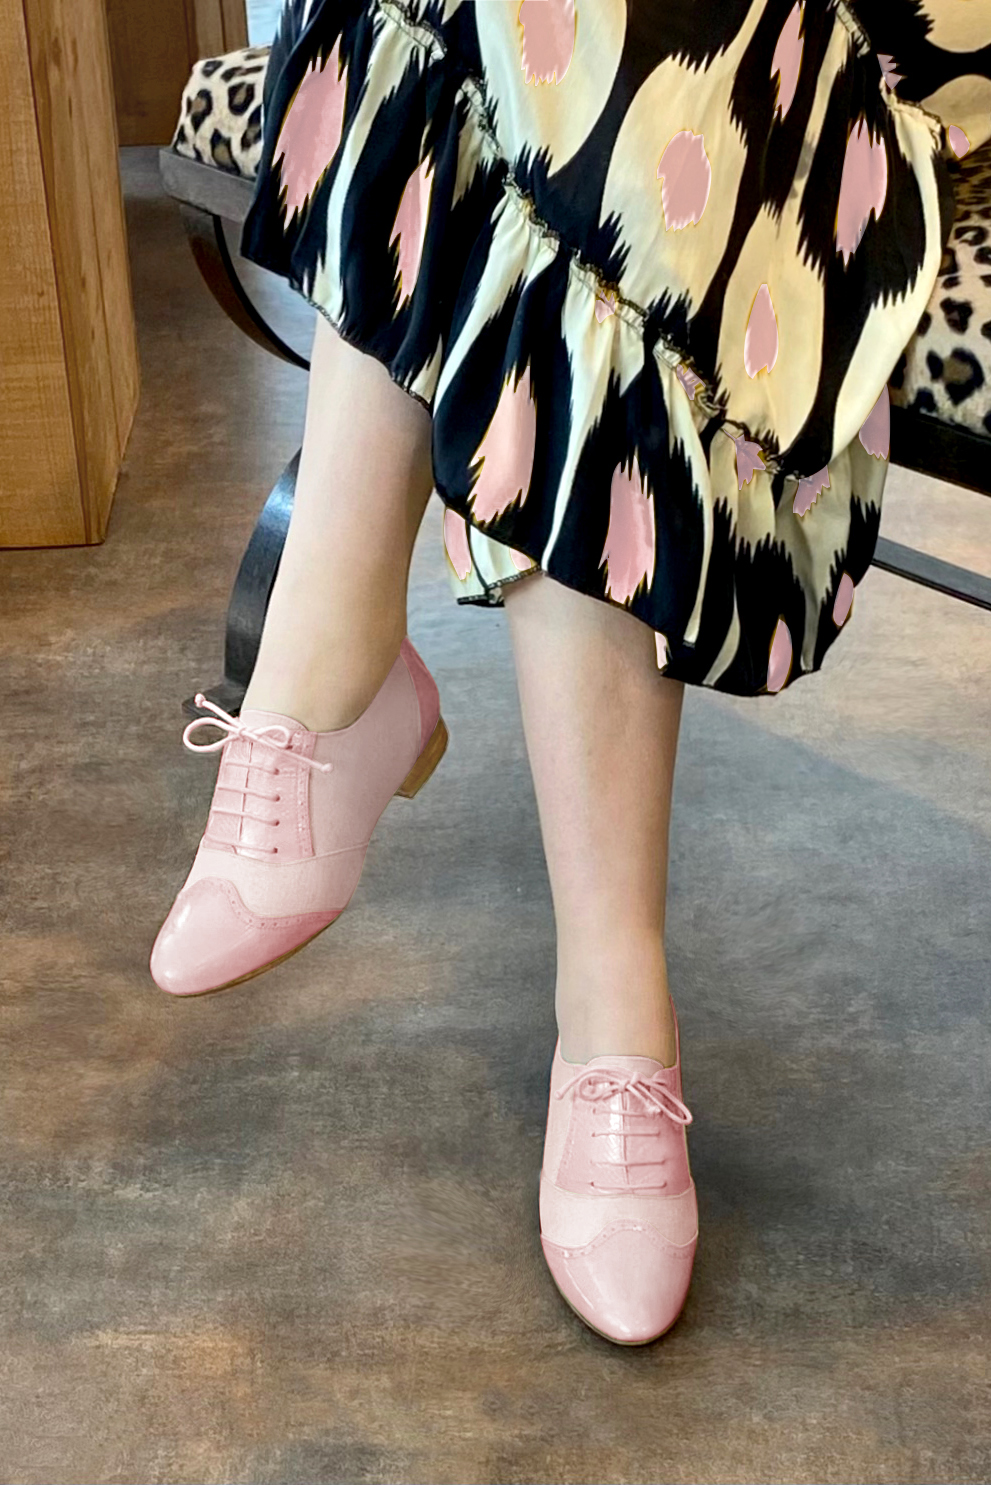 Chaussure femme à lacets : Derby original couleur rose pâle.. Vue porté - Florence KOOIJMAN